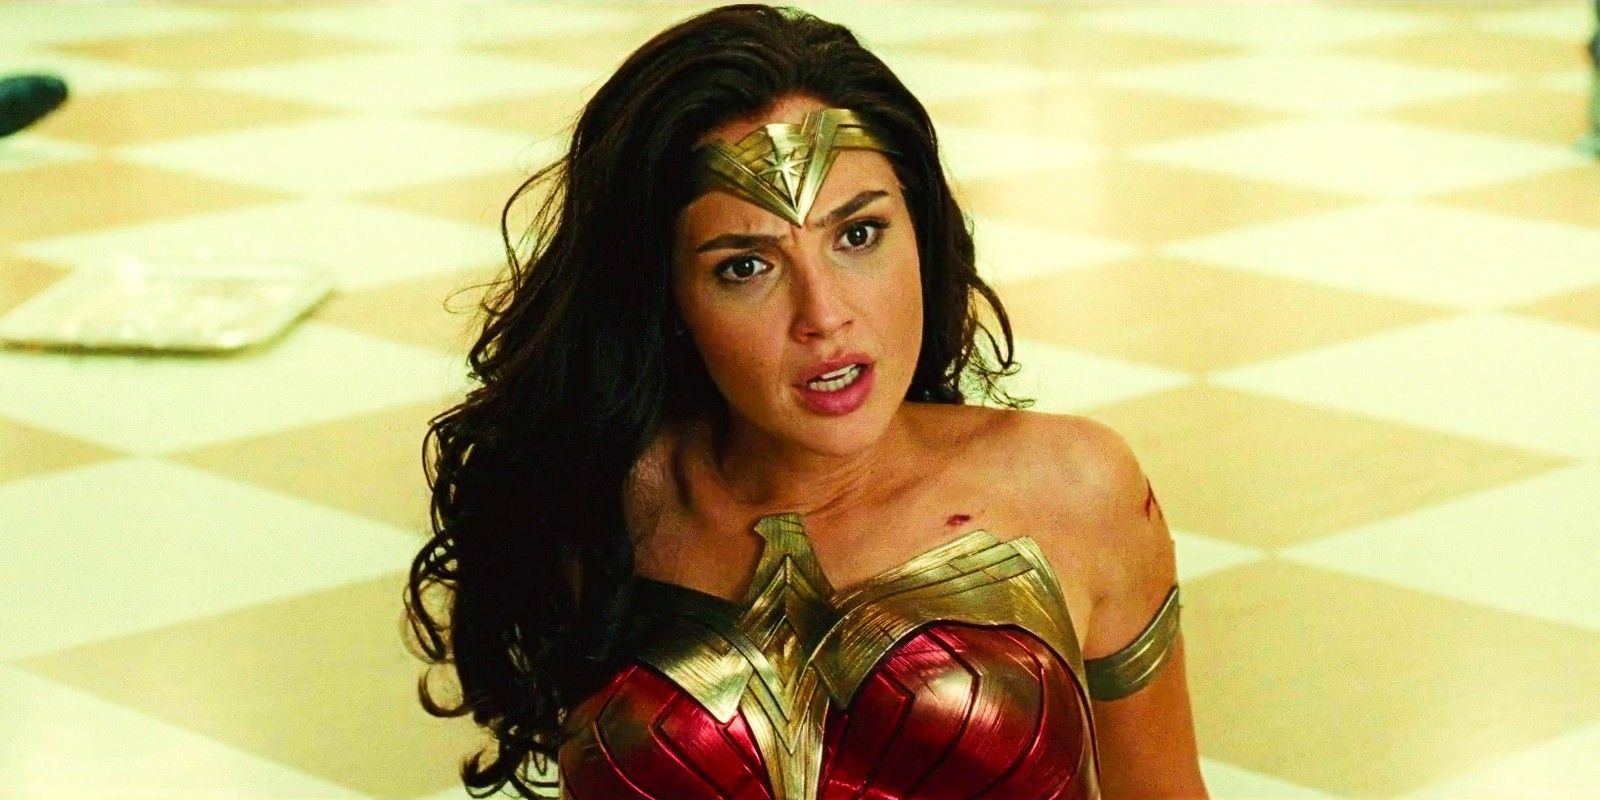 El popular fancast de DCU Wonder Woman habla sobre el futuro de su película de superhéroes: “Simplemente no está en las cartas”